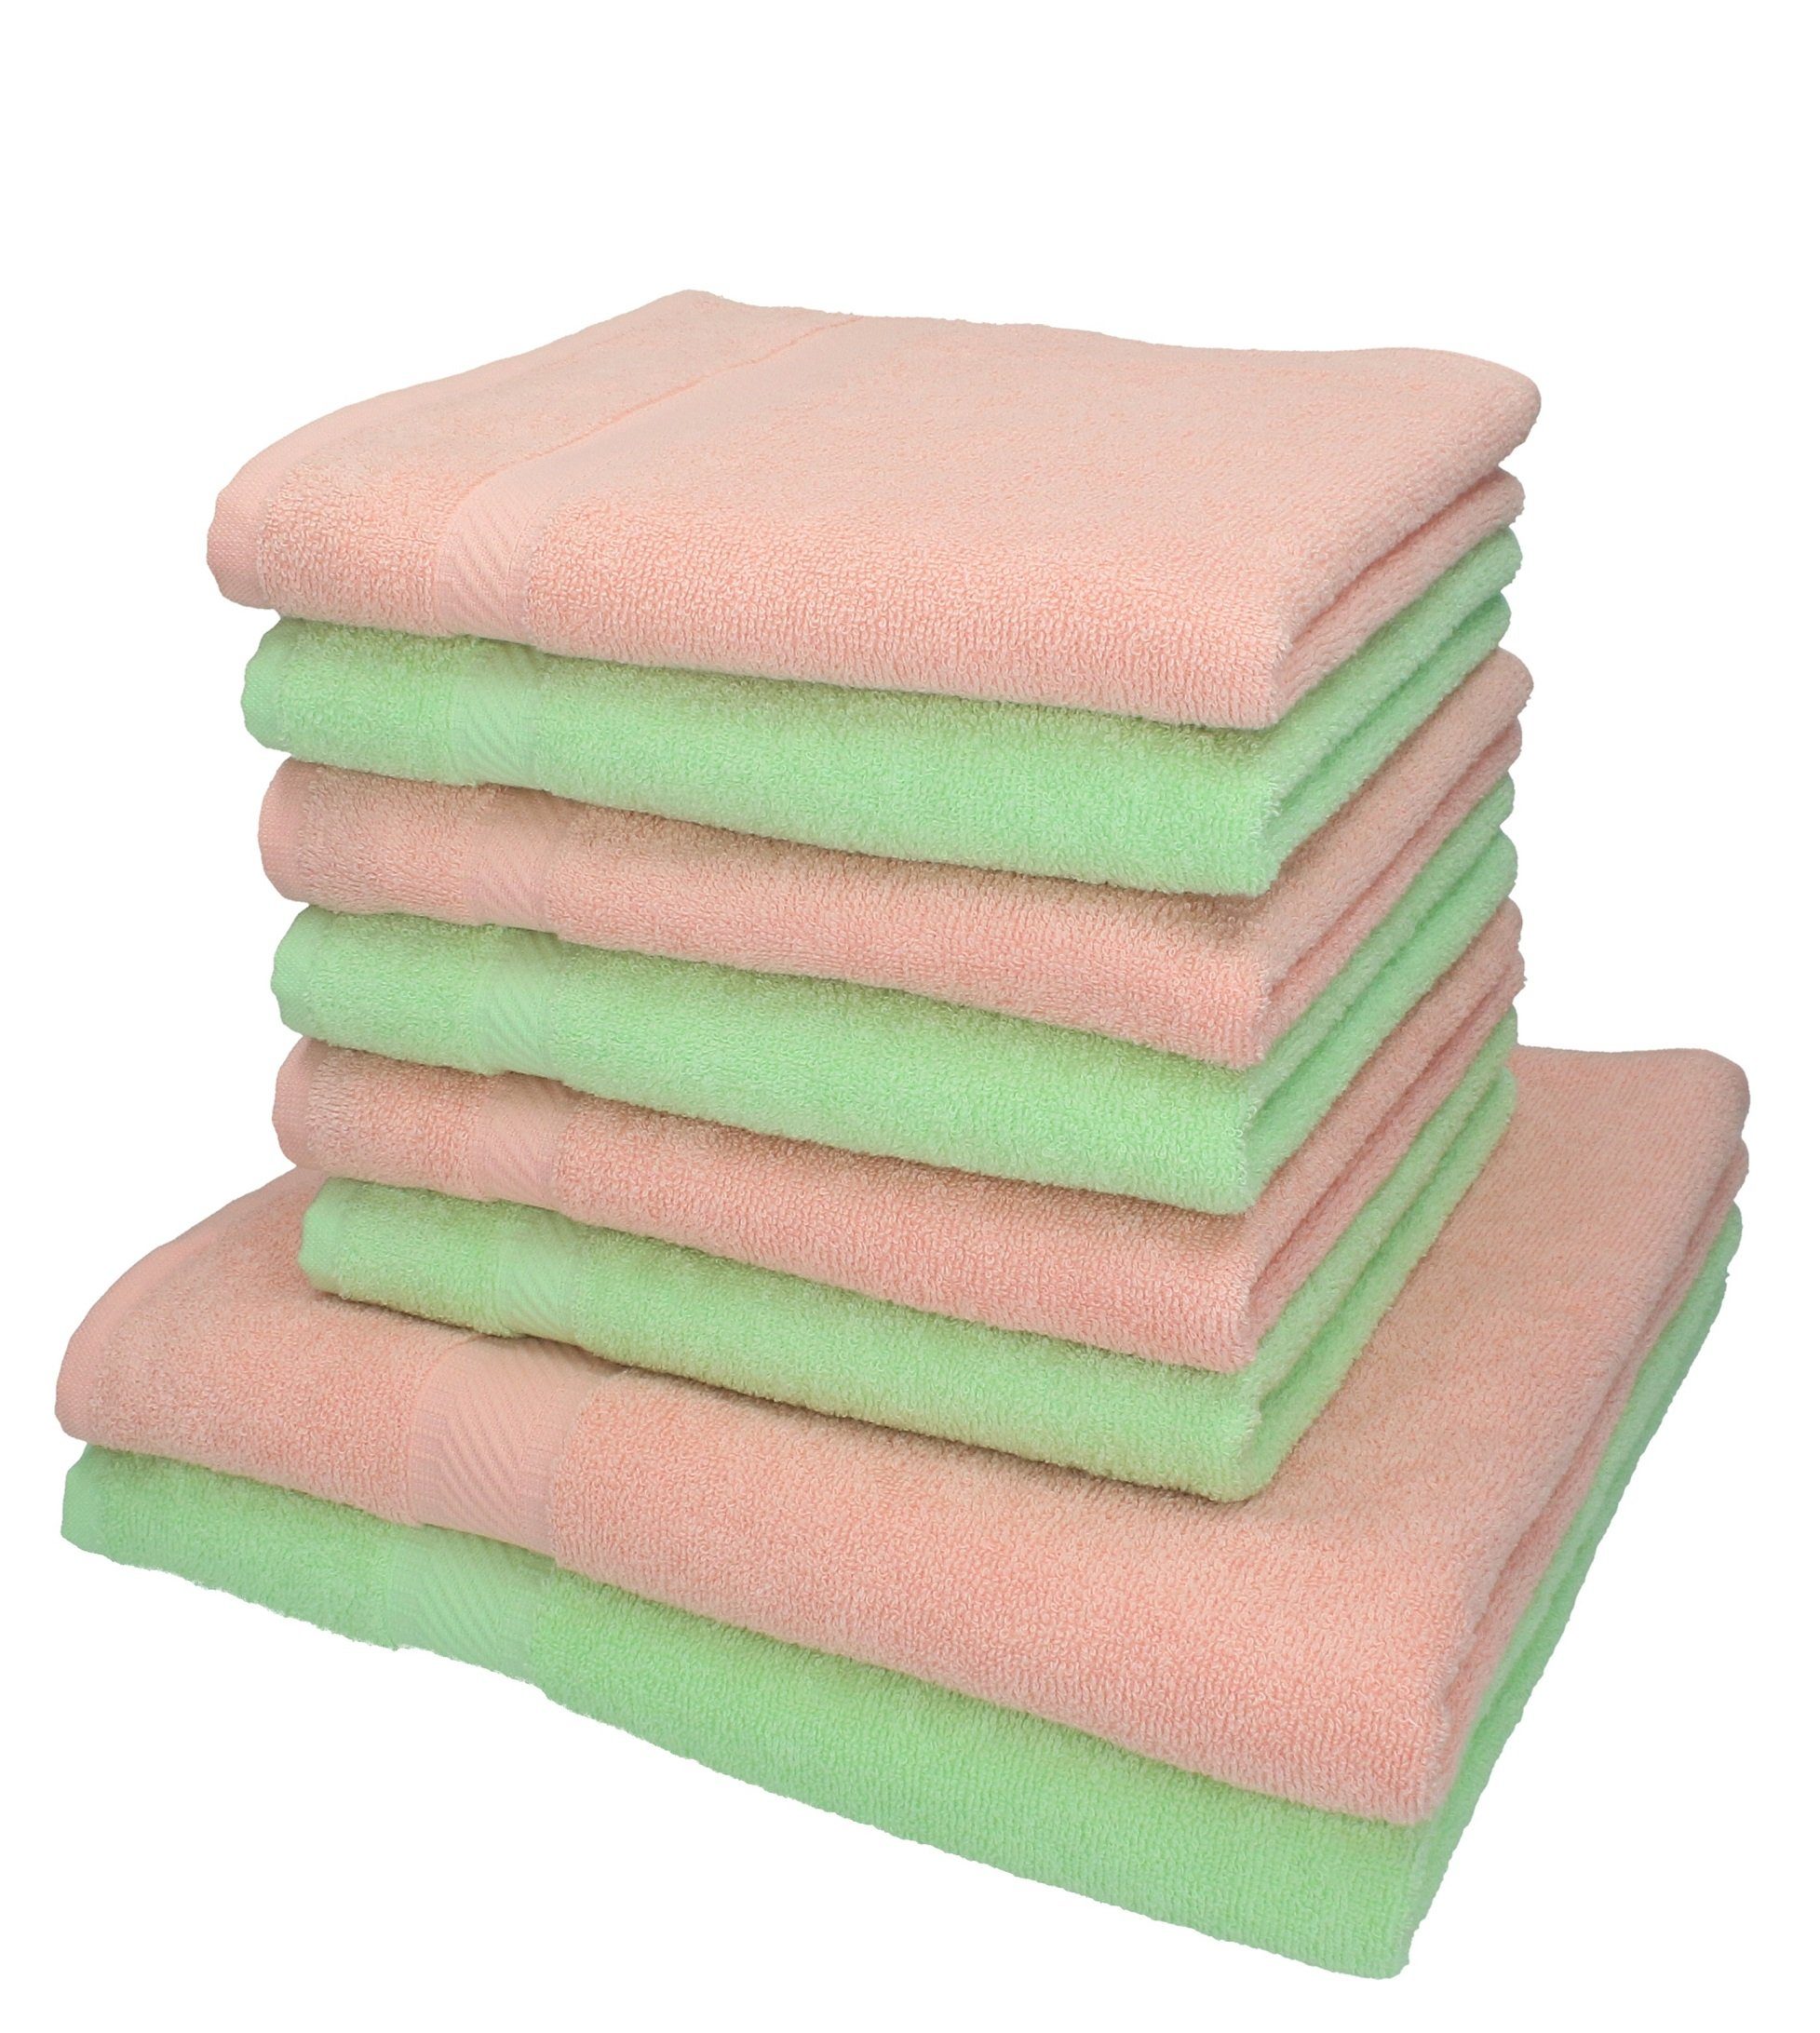 Betz Handtuch Set 8-tlg. Handtuch-Set Palermo Farbe apricot und grün, 100% Baumwolle | Handtuch-Sets